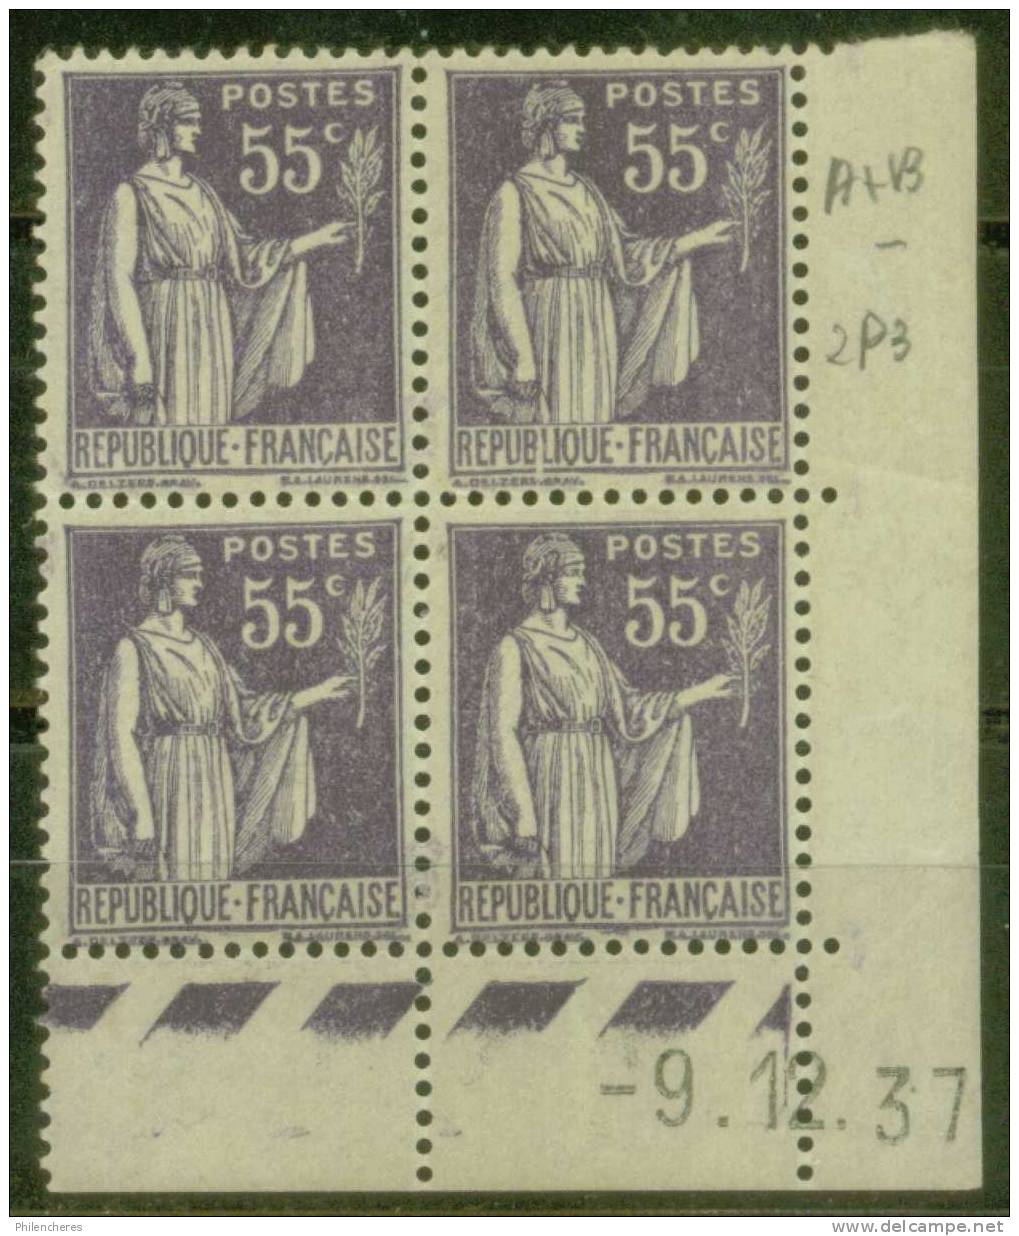 France Bloc De 4 - Coin Daté 1937 - Yvert N° 363 X - Cote 9 Euros - Prix De Départ 3 Euros - 1930-1939